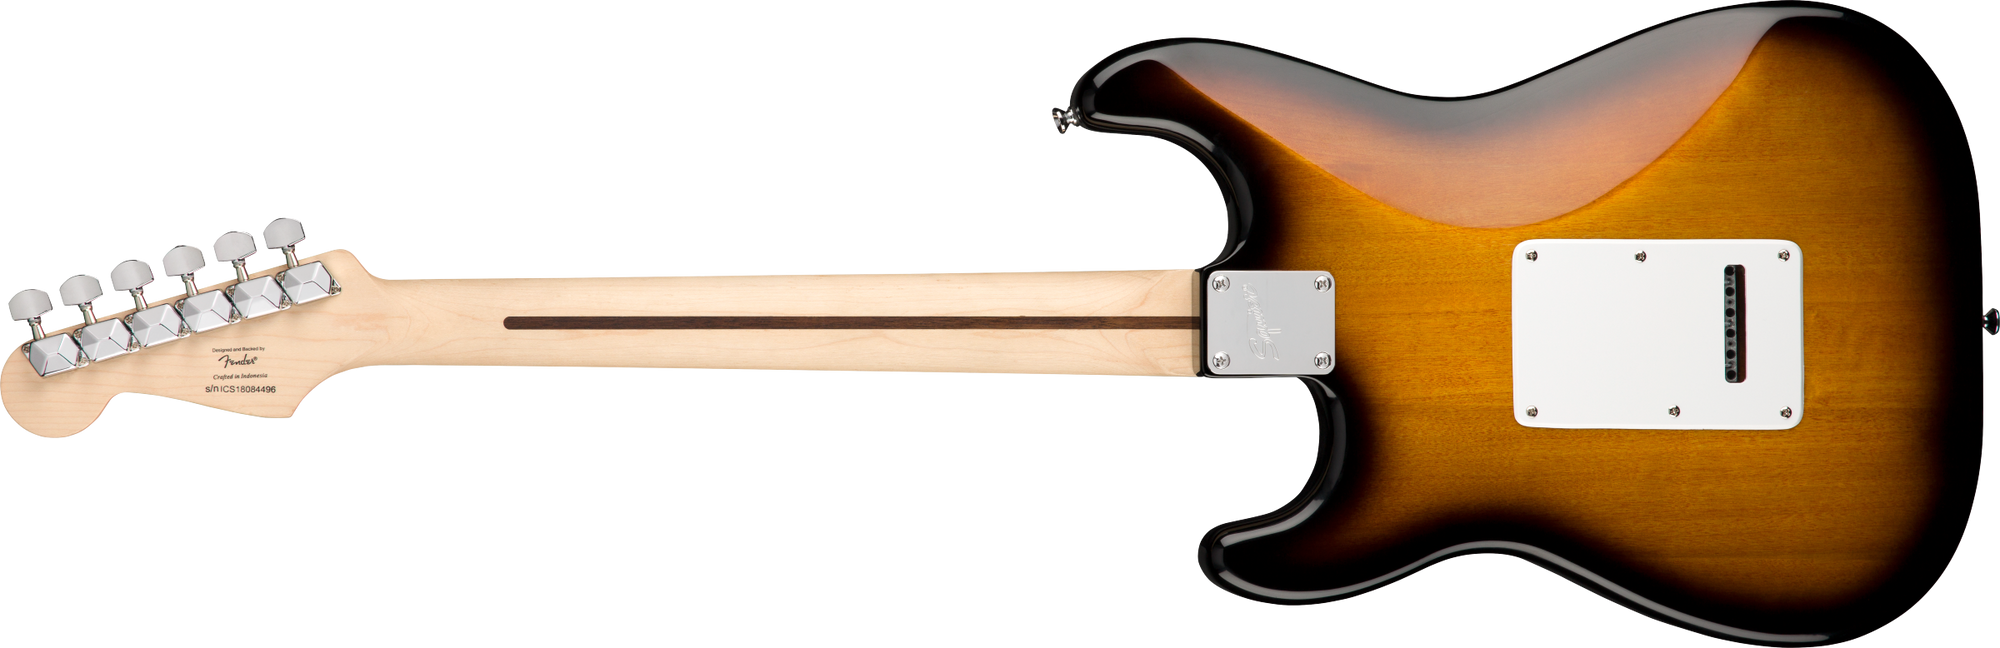 Squier Stratocaster Pack, Brown Sunburst